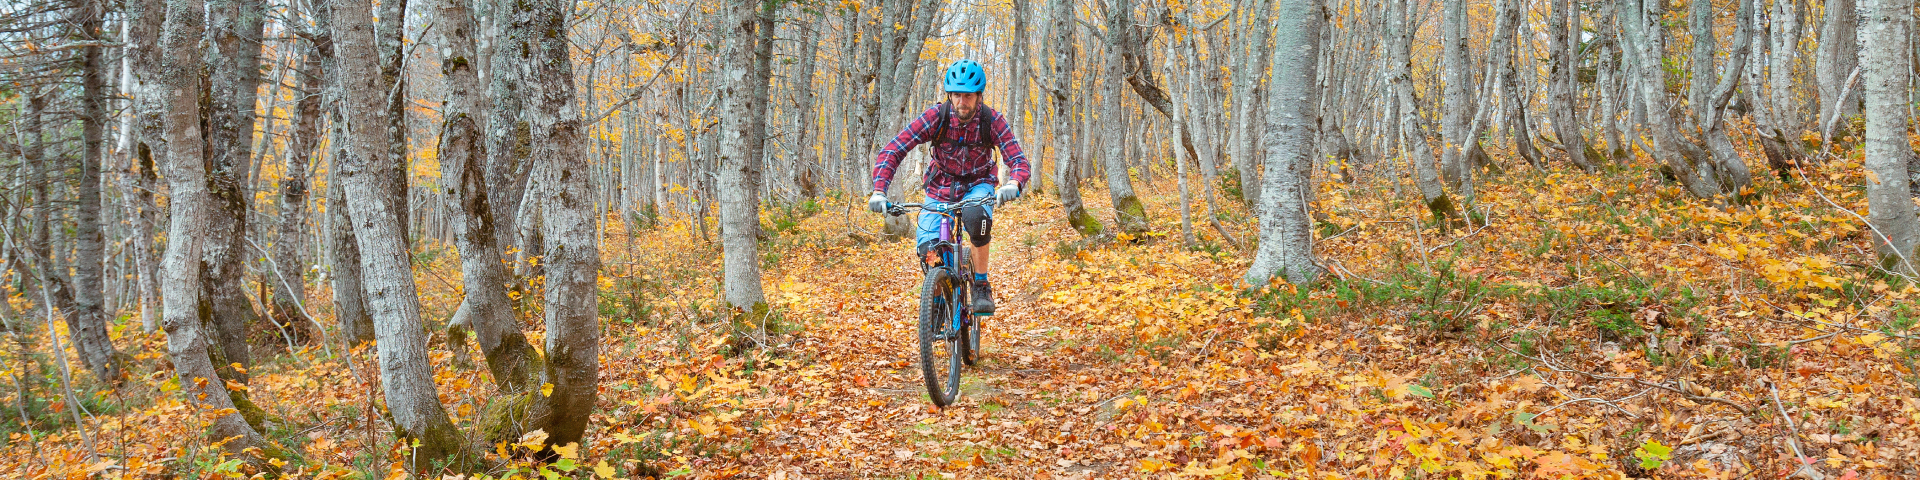 Un visiteur fait du vélo de montagne l'automne dans un sentier.